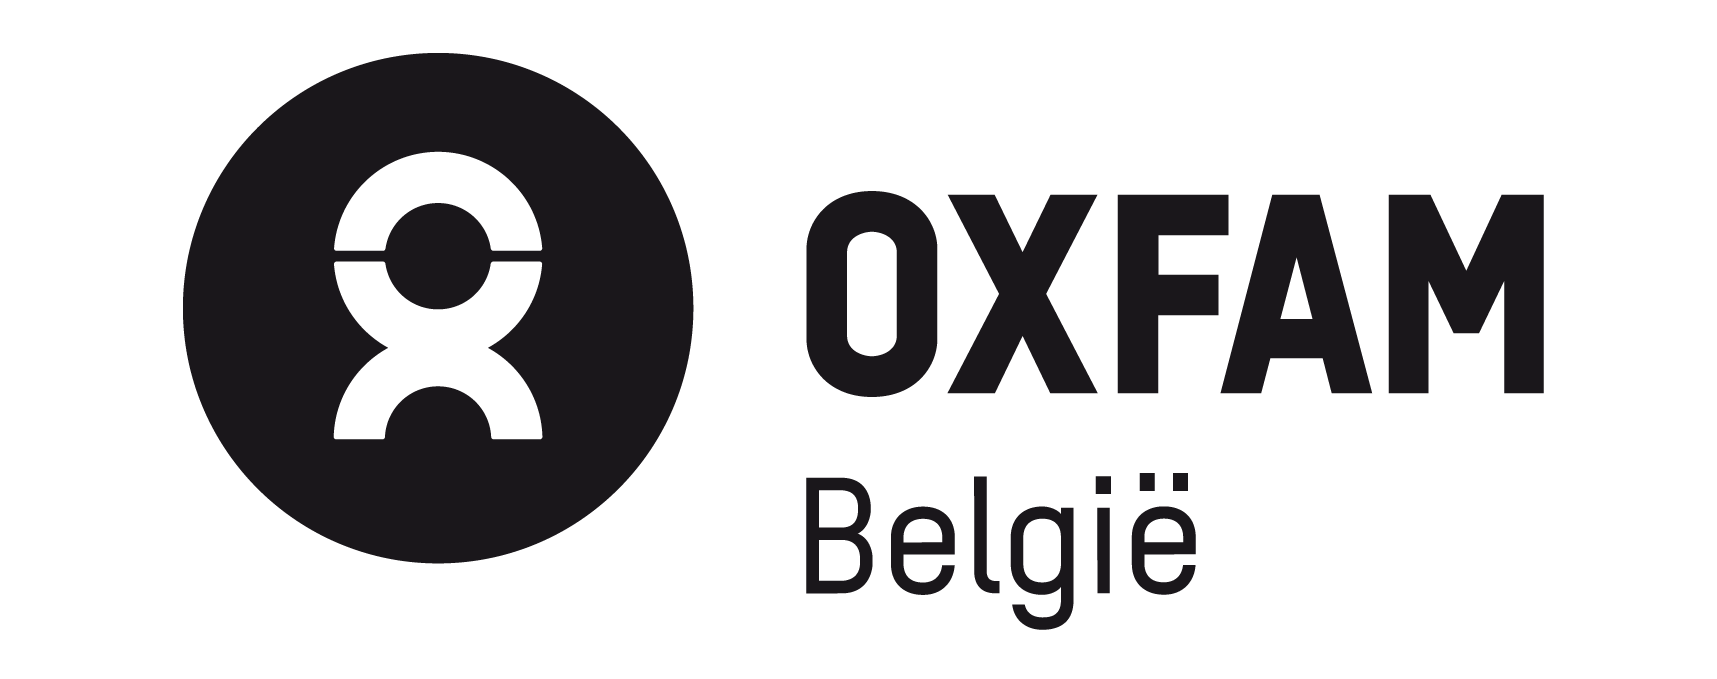 Oxfam-België